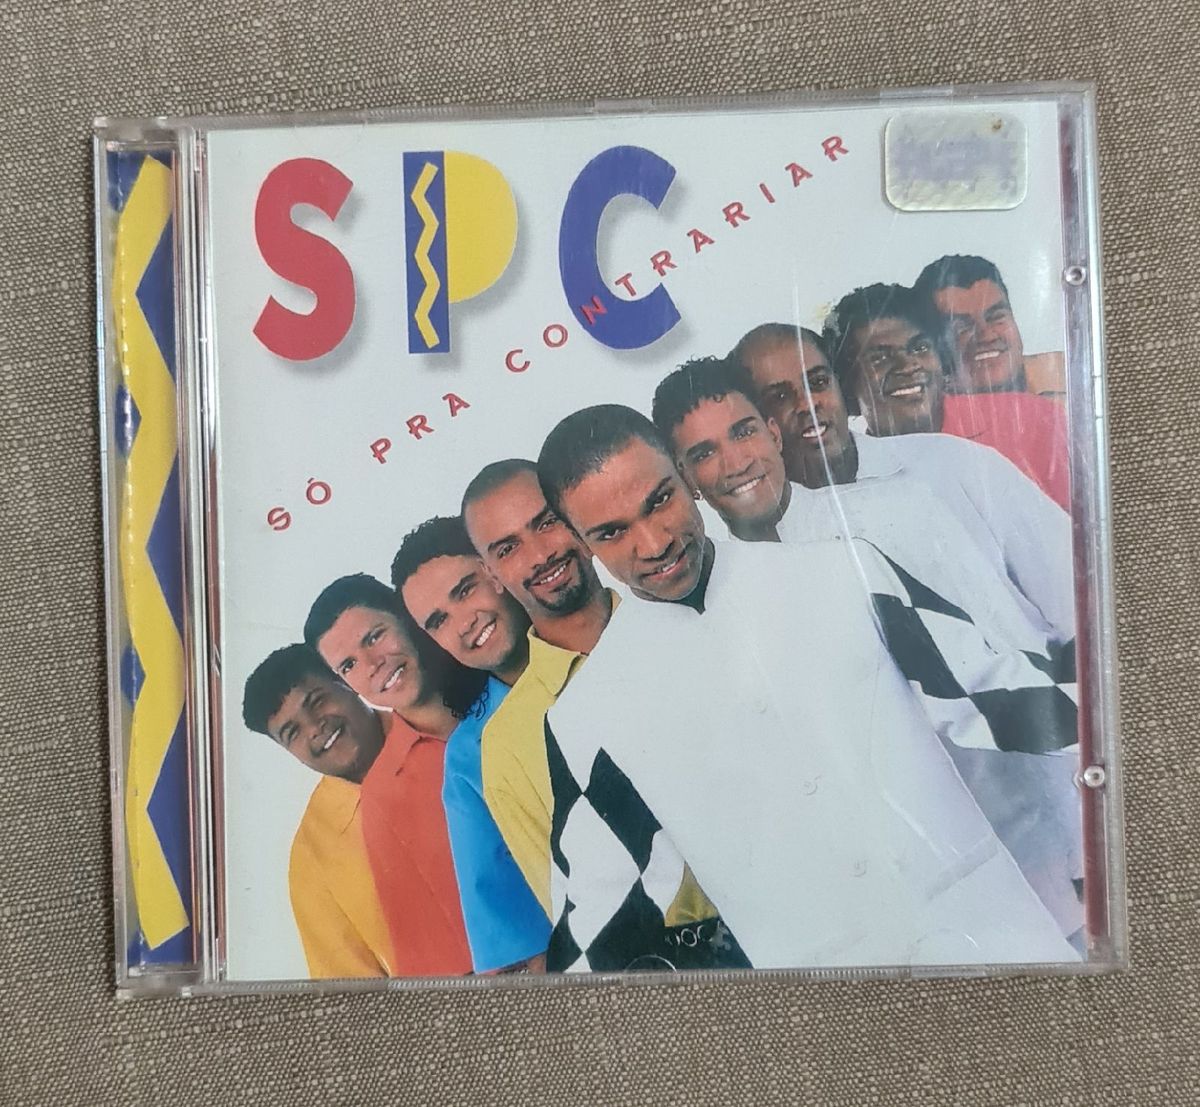 CD - Só Pra Contrariar - Colecionadores Discos - vários títulos em Vinil,  CD, Blu-ray e DVD